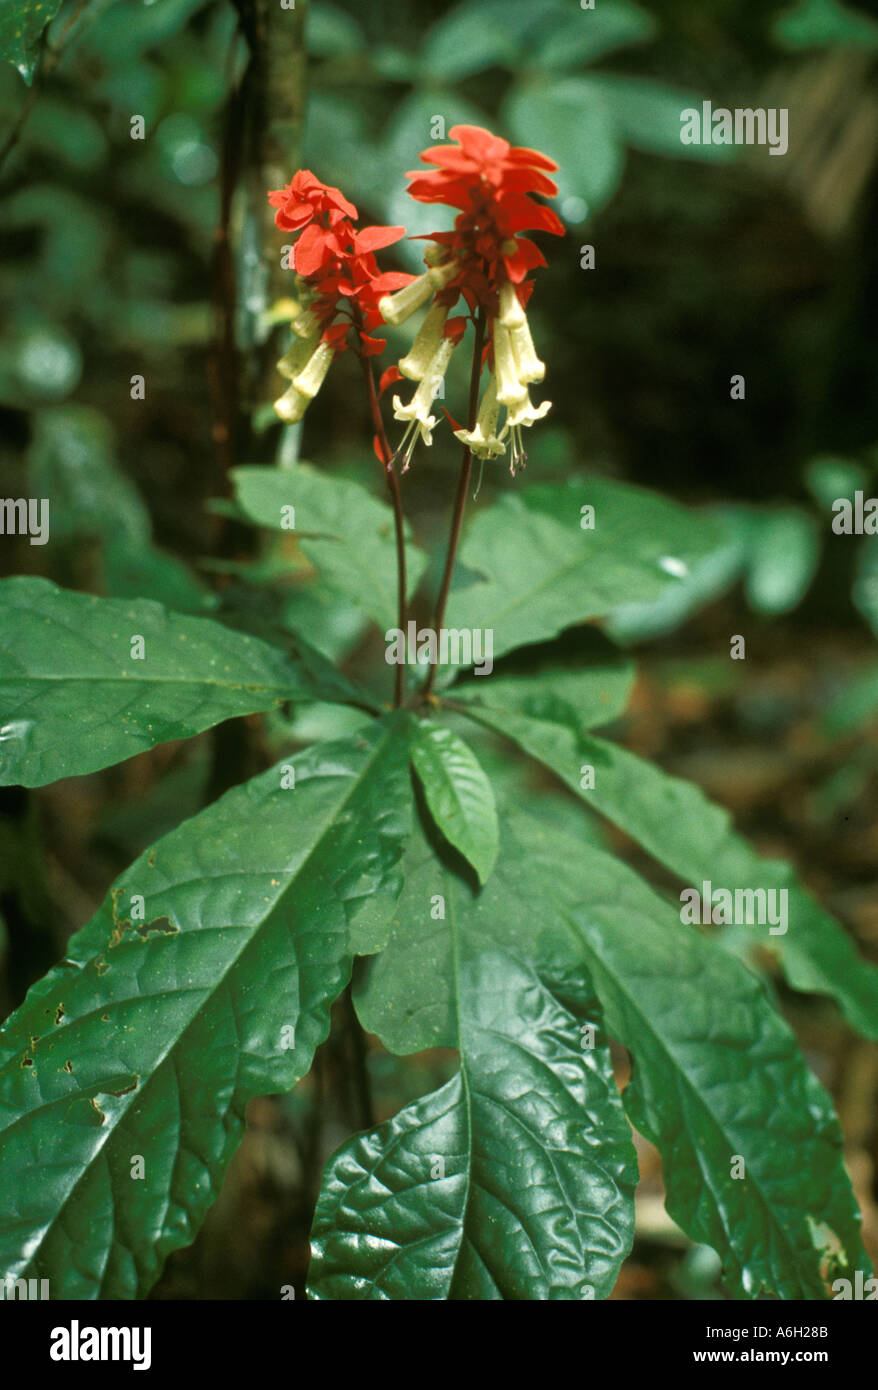 Amasonia campestris, famiglia Verbenaceae, nel sottobosco della foresta pluviale tropicale del Venezuela meridionale nella pianura del Sud America. Foto Stock